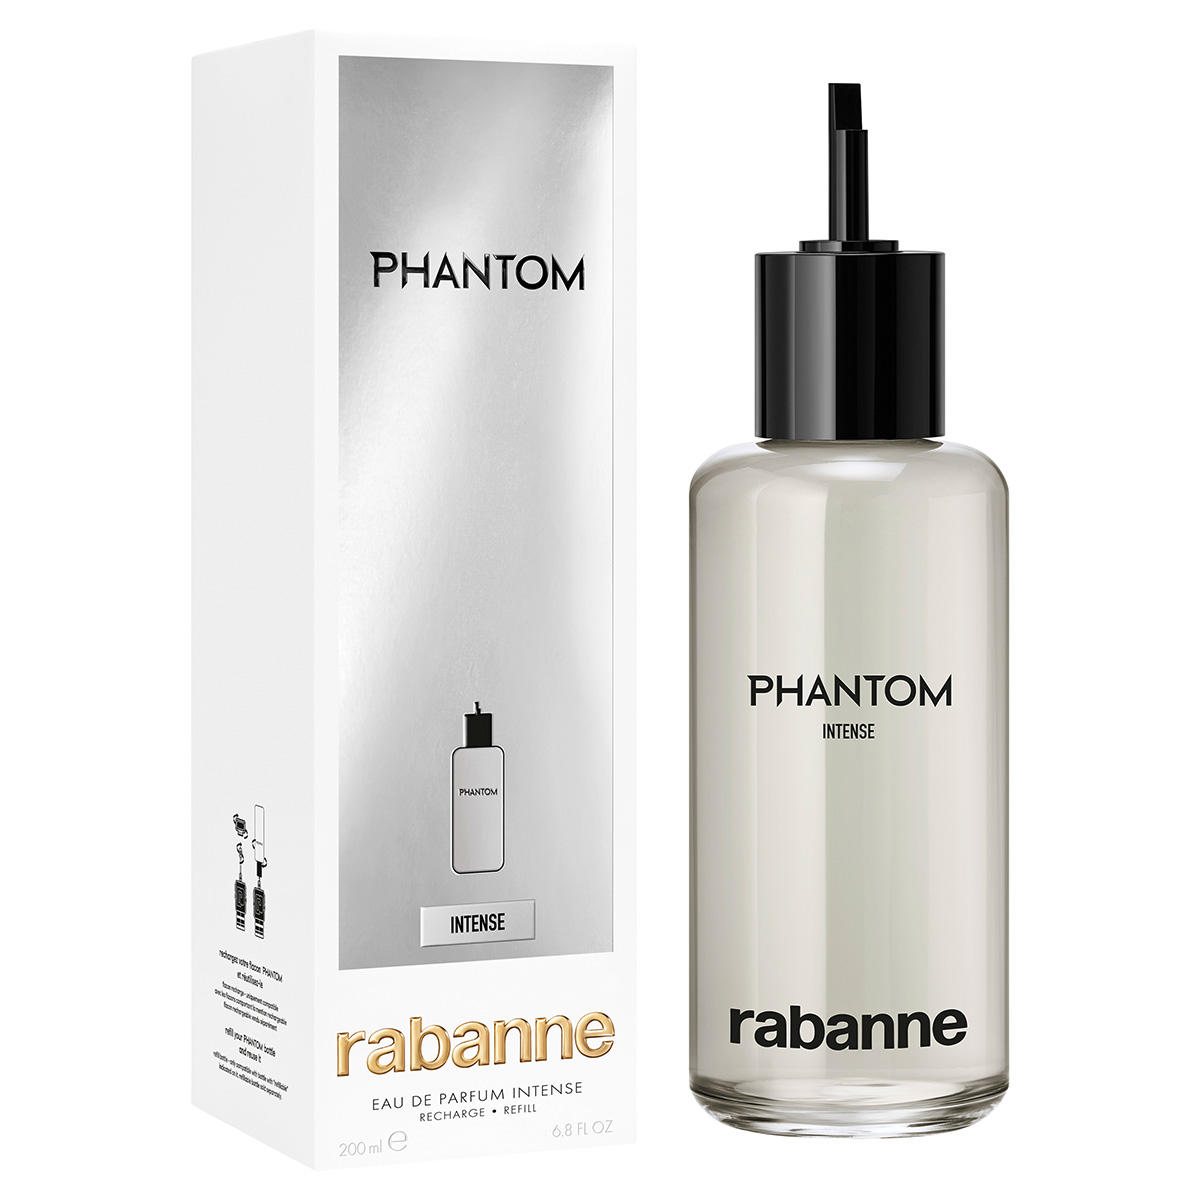 rabanne Phantom Intense Eau de Parfum Intense Refill 200 ml - 2